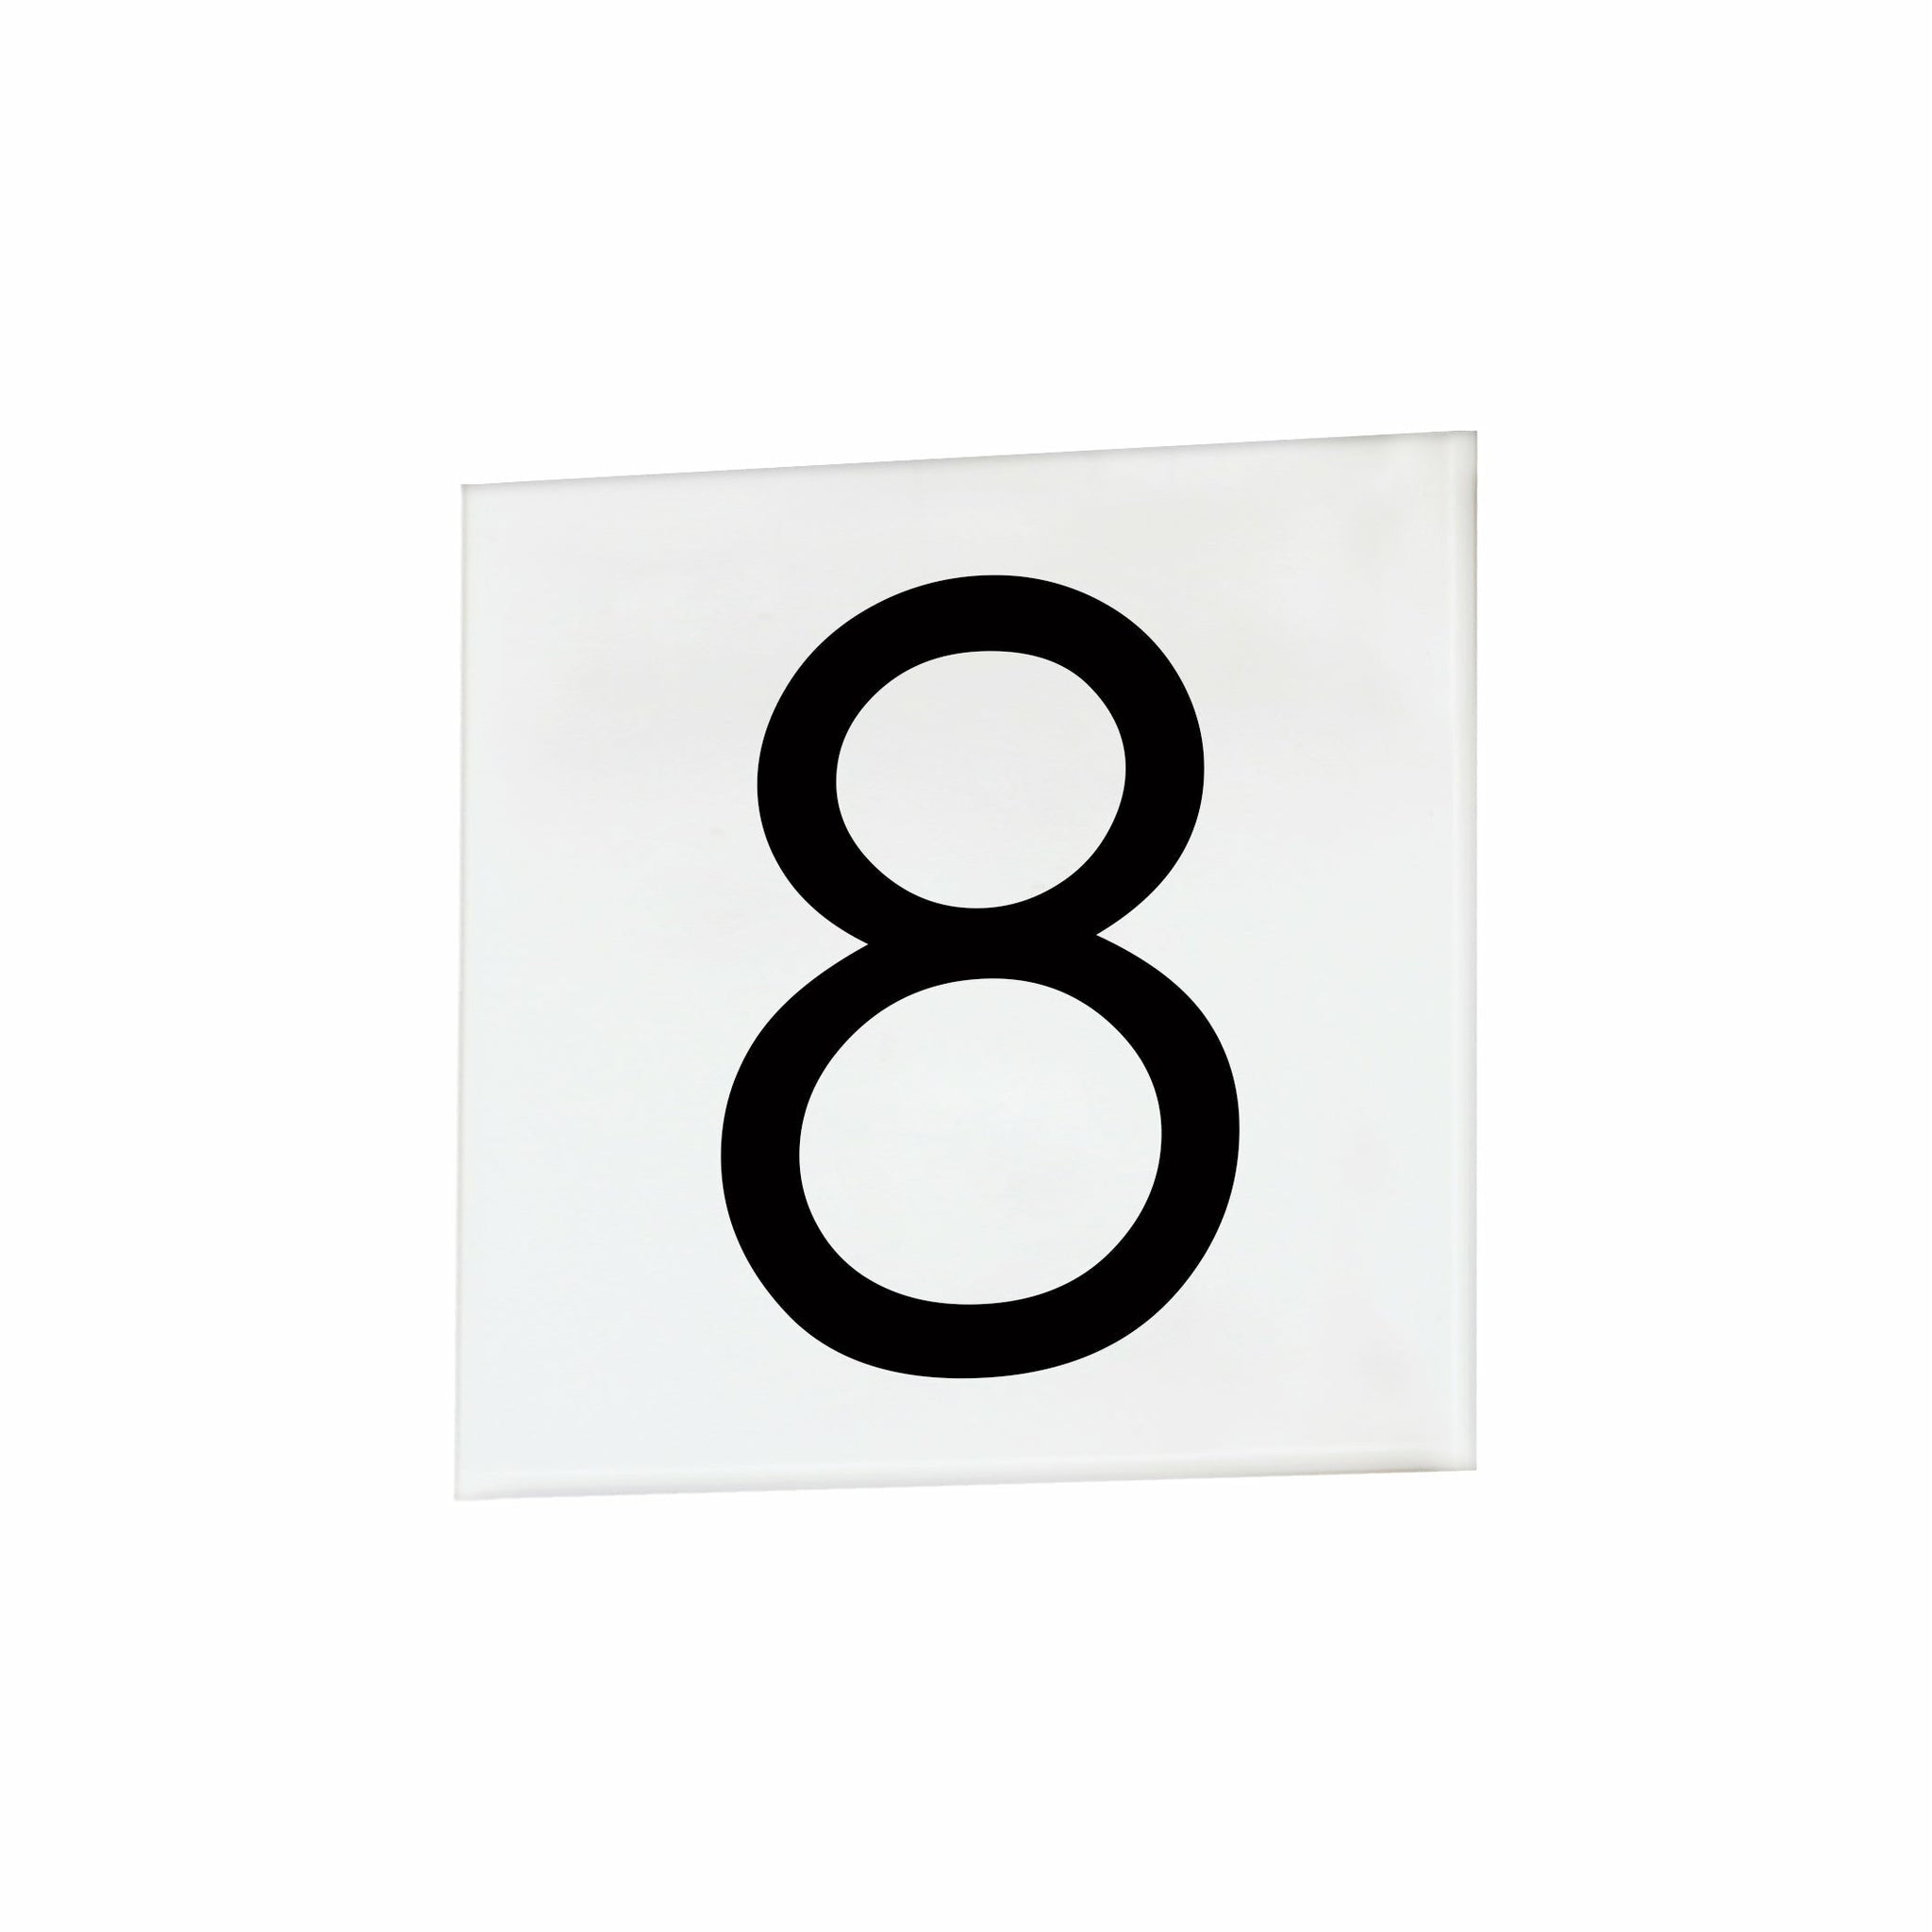 4" Square Tile Number 8 (Sans Serif)